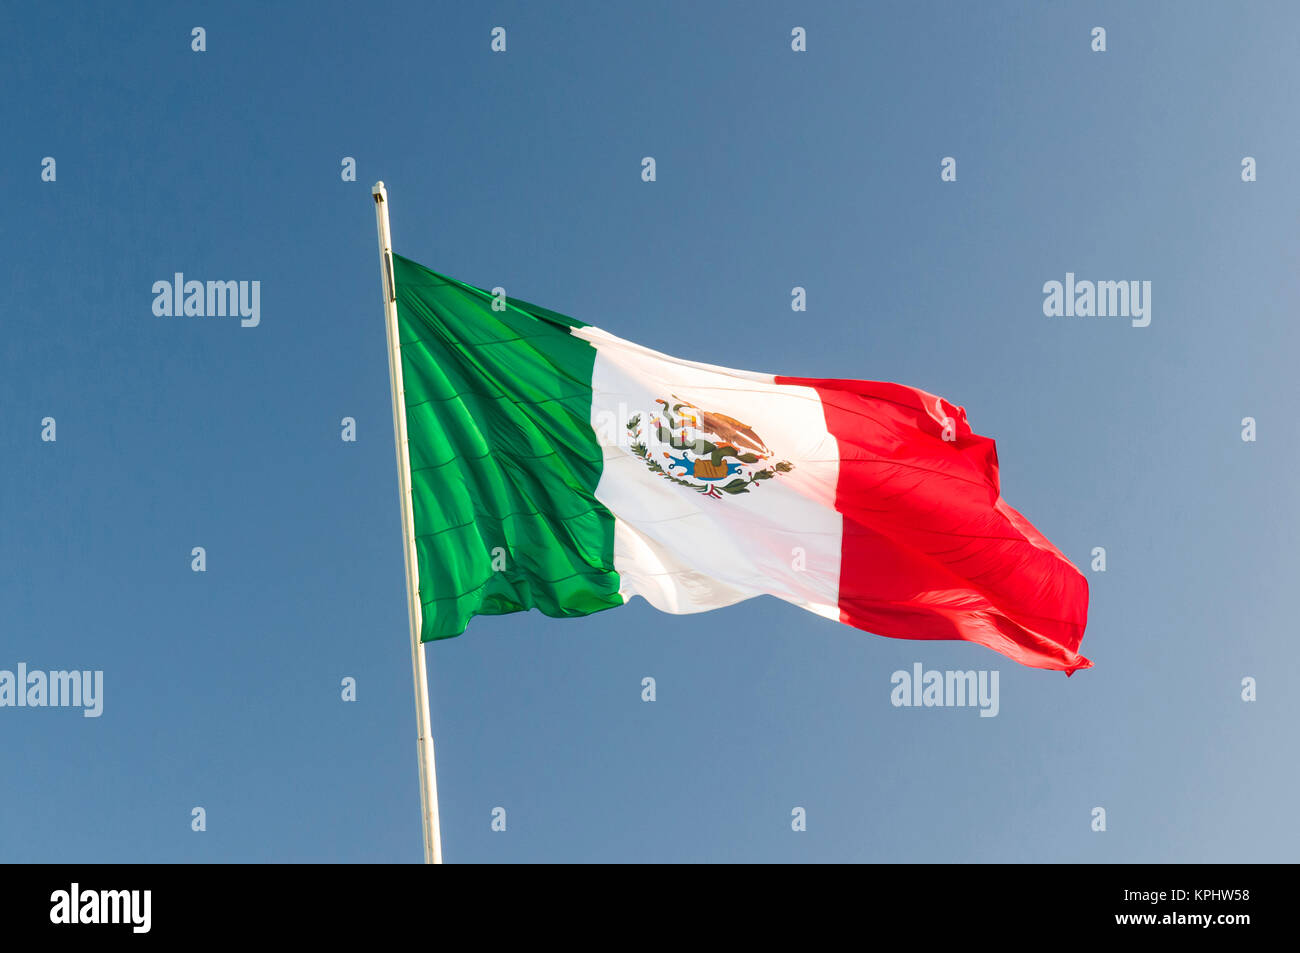 USA, Texas, Brownsville, Matamoros, Mexico. Mexican flag flying over border. Stock Photo